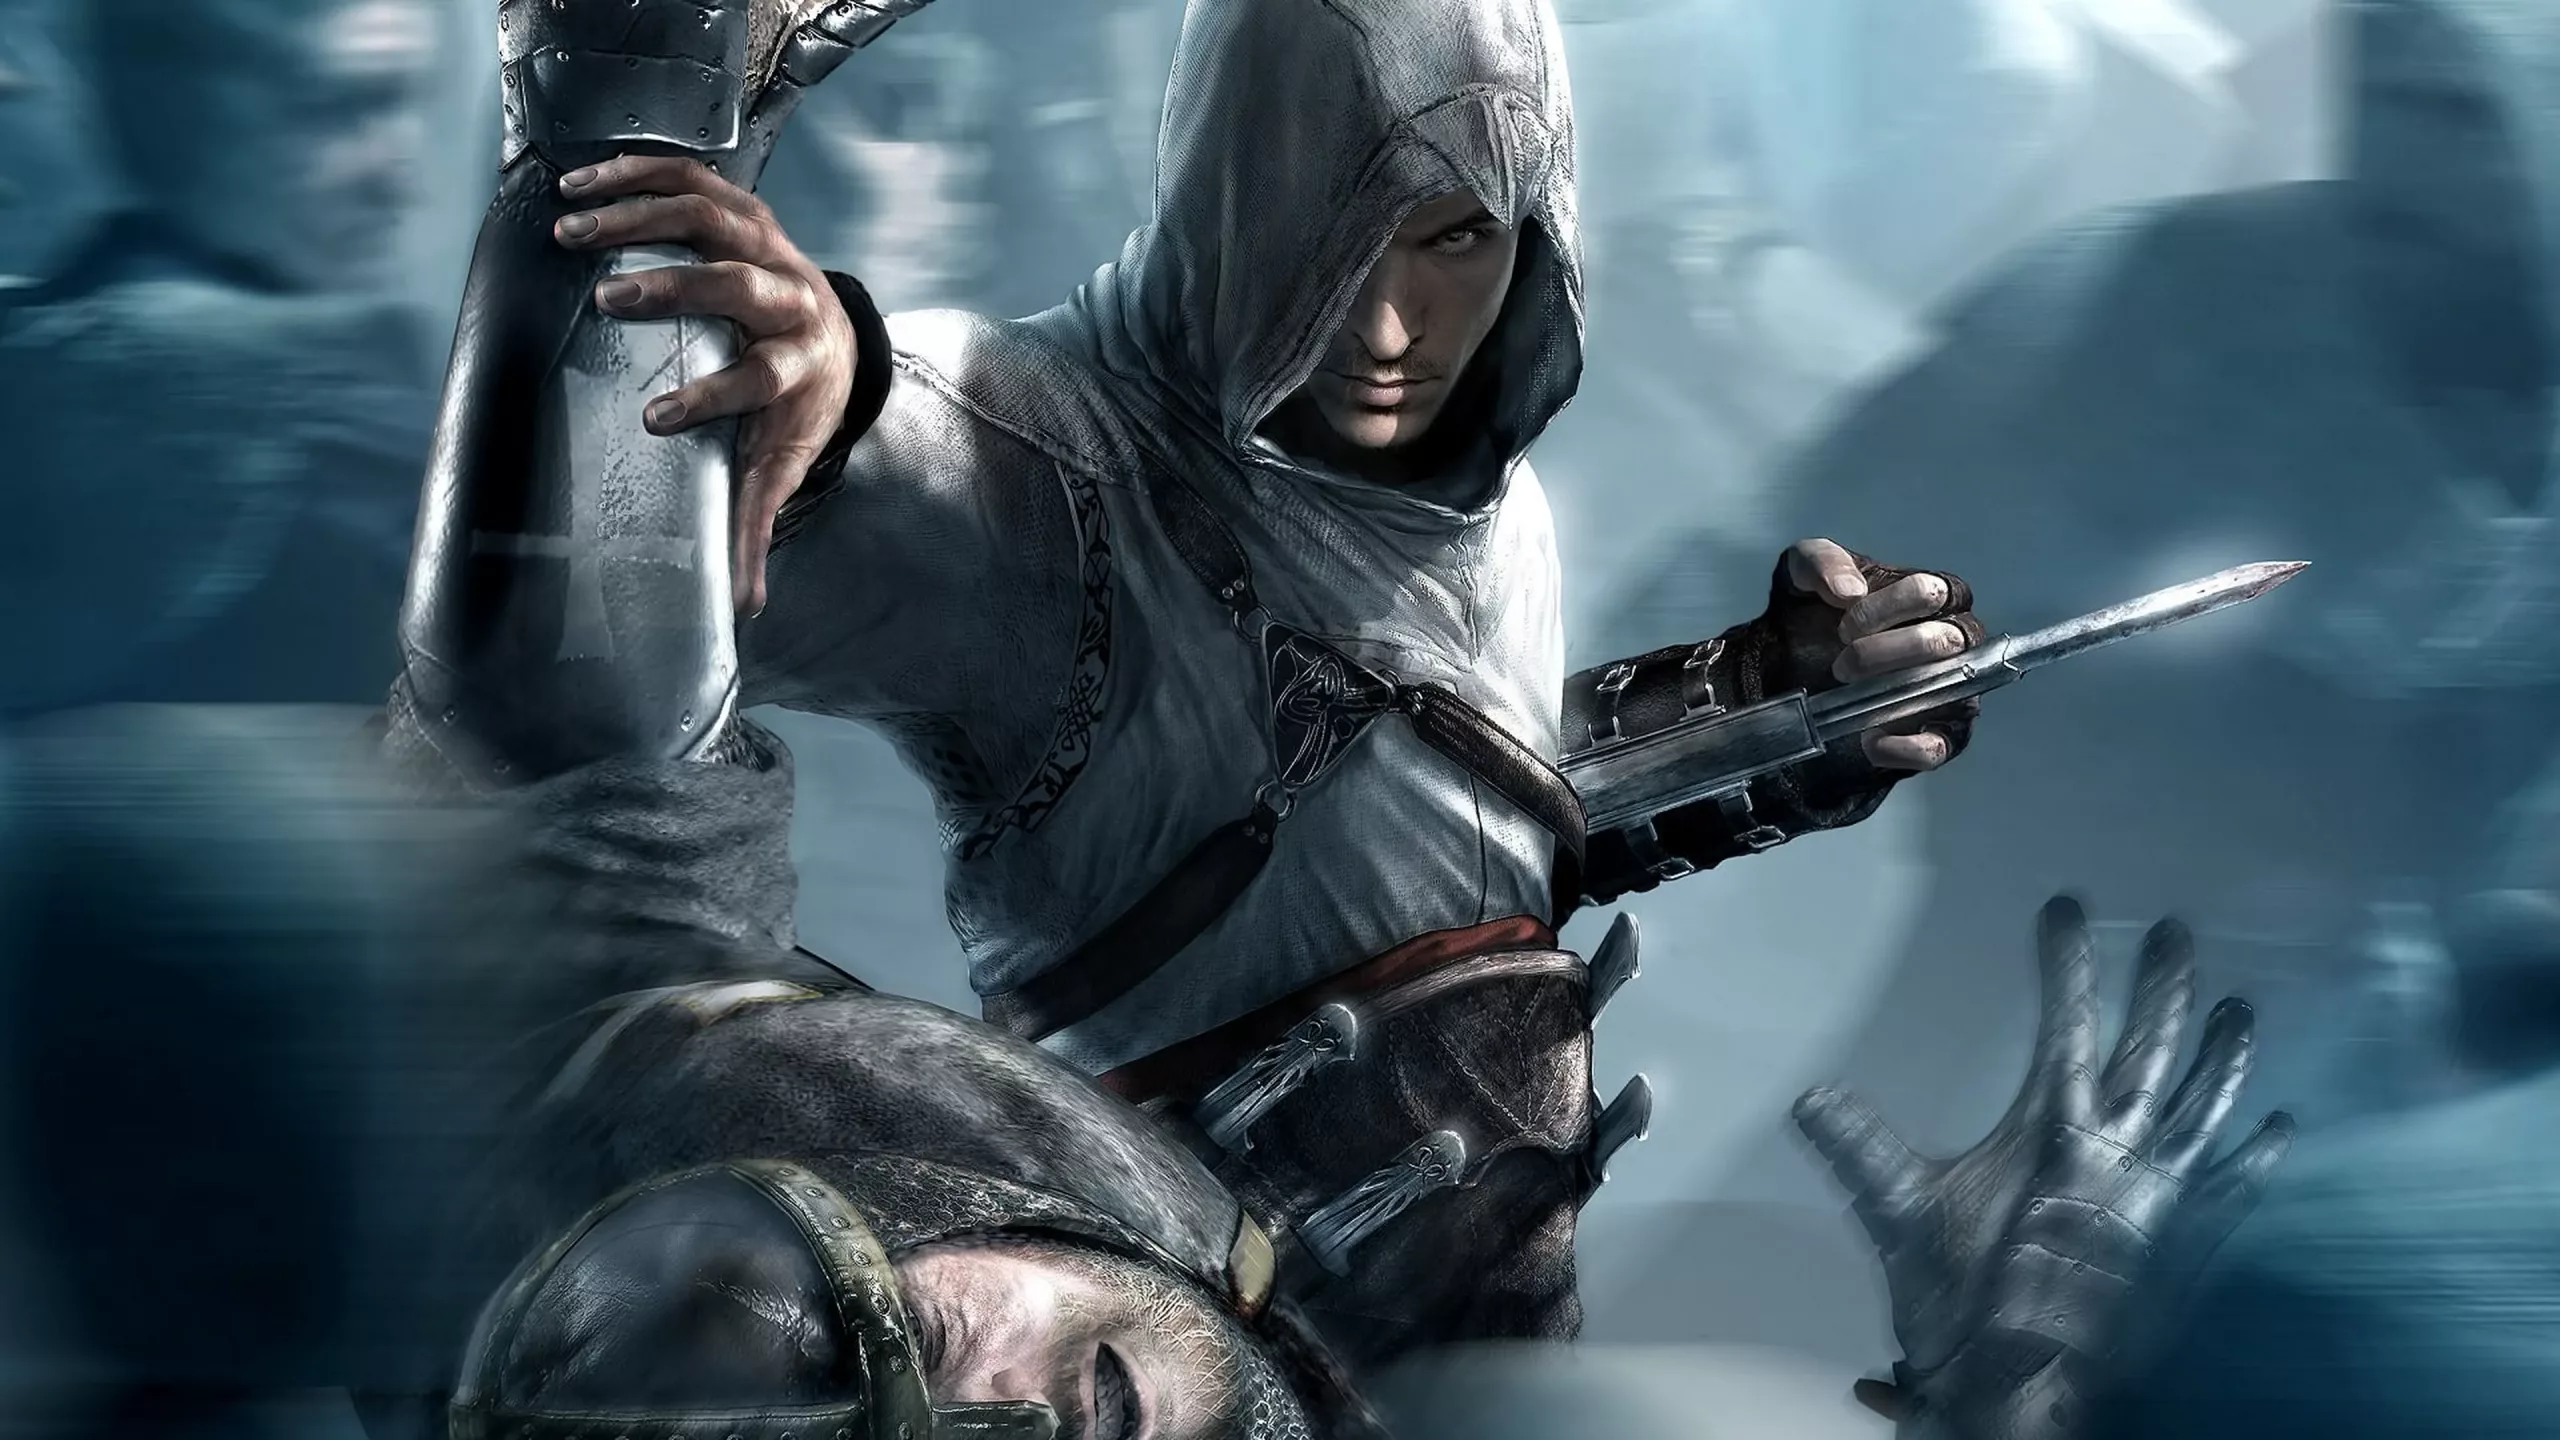 Credo de Assassin’s Creed: «Nada es verdad, todo está permitido»